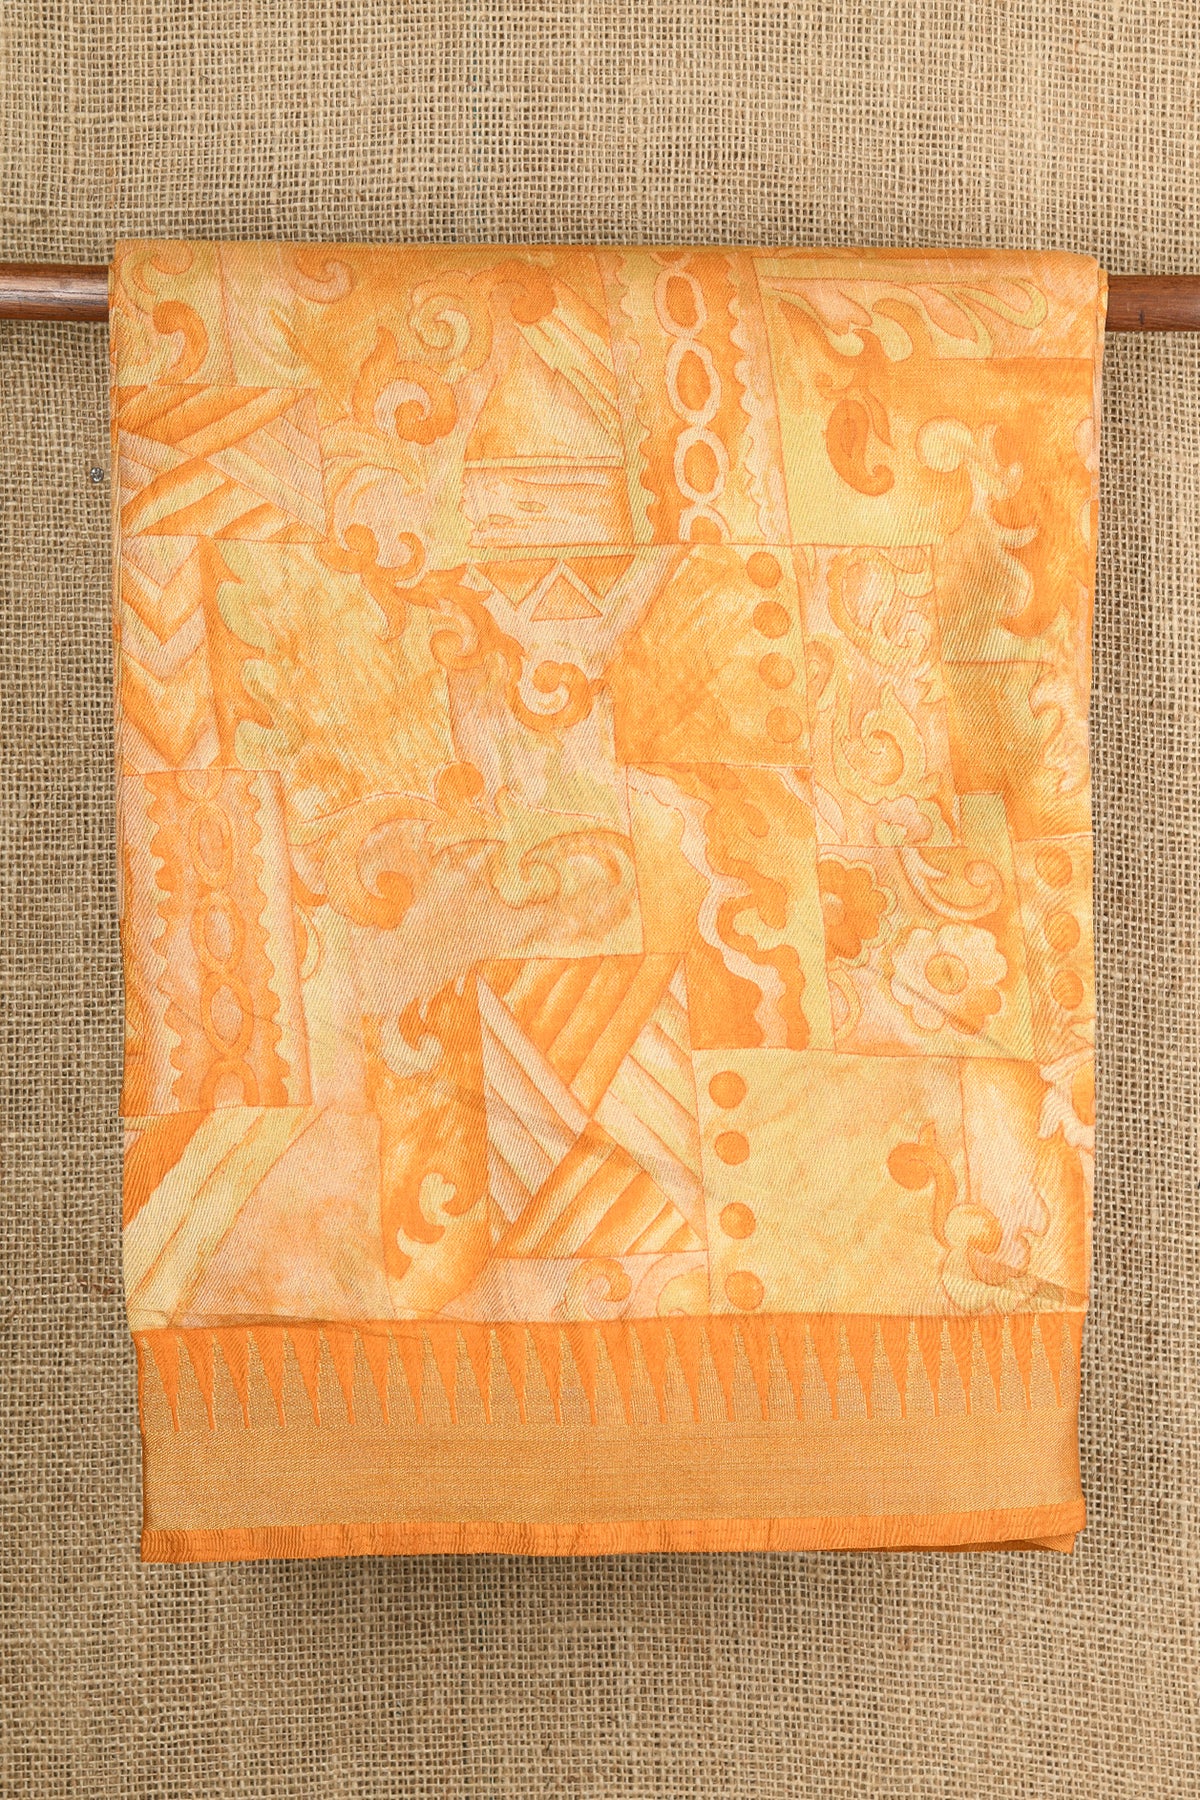 Temple Zari Border With Allover Design Digital Printed Peach Orange Semi Raw Silk Saree